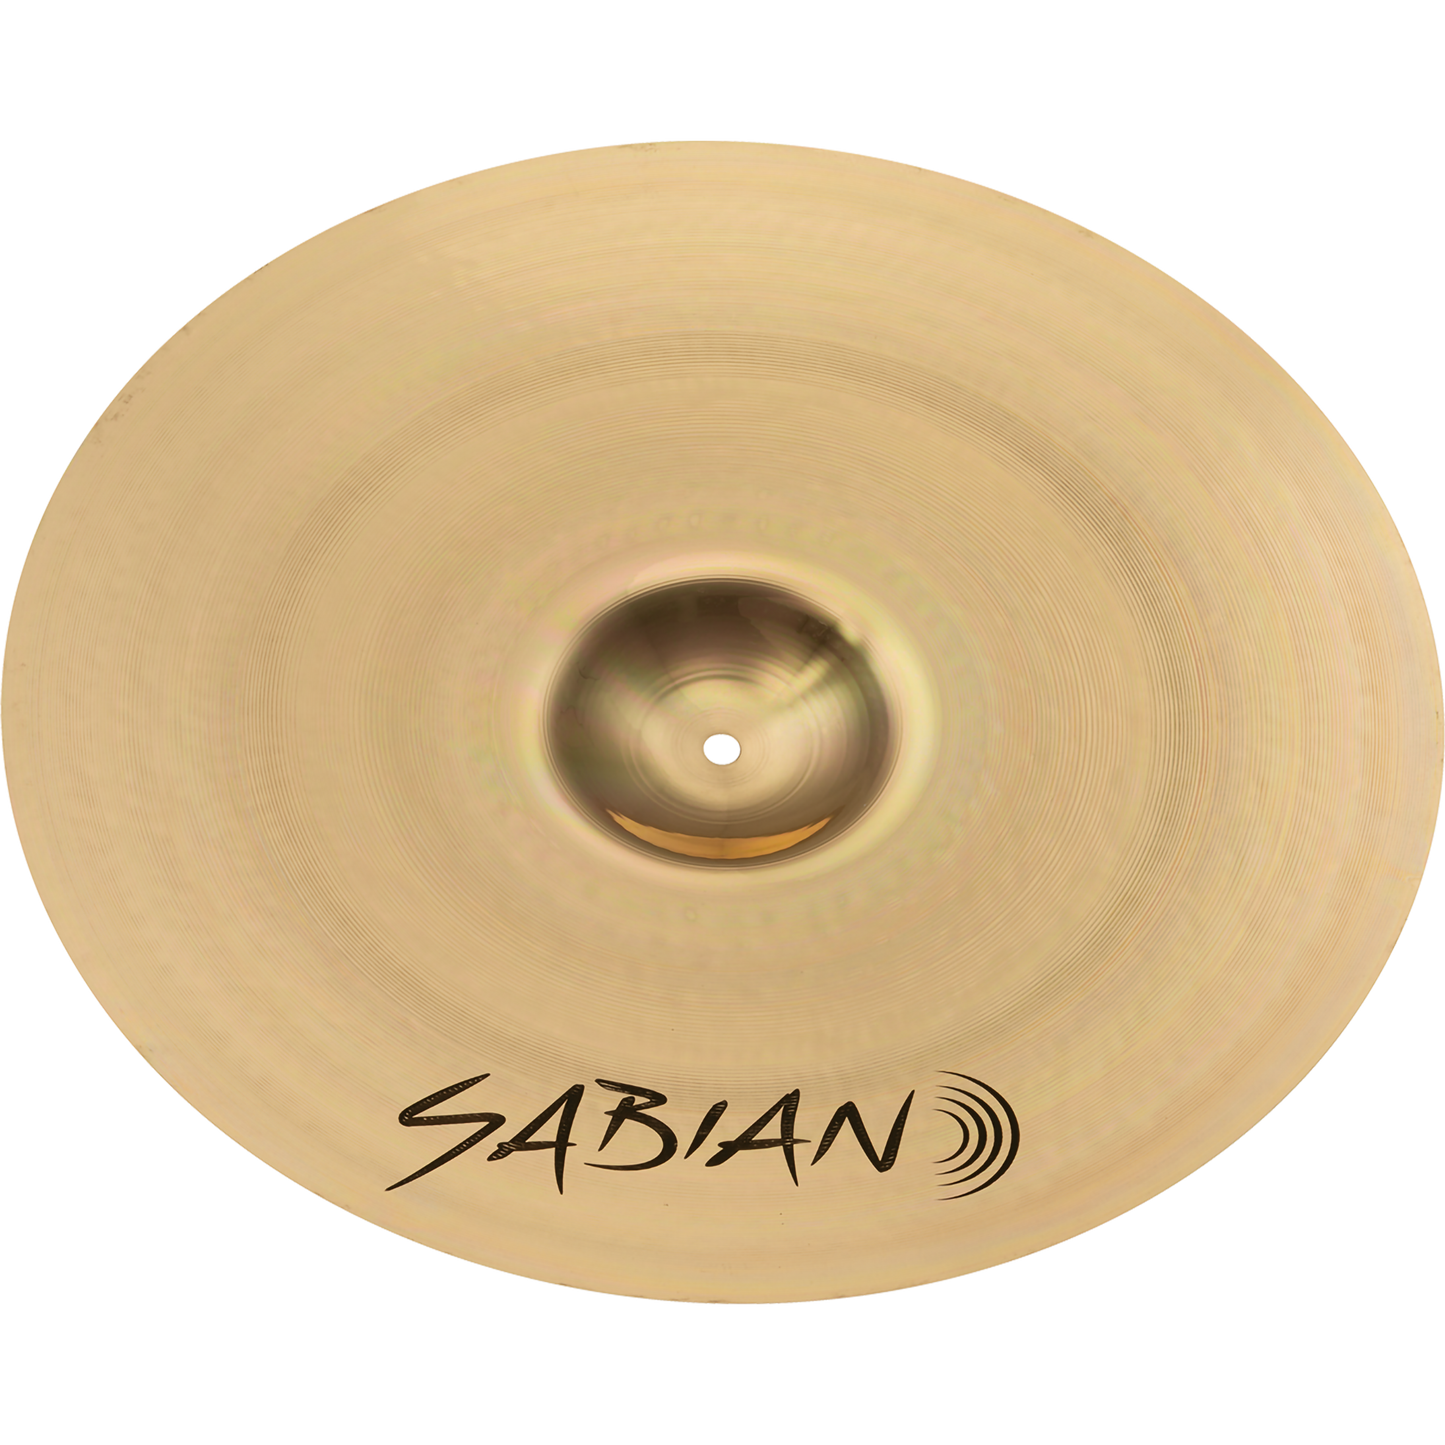 Sabian 20” XSR Ride Cymbal